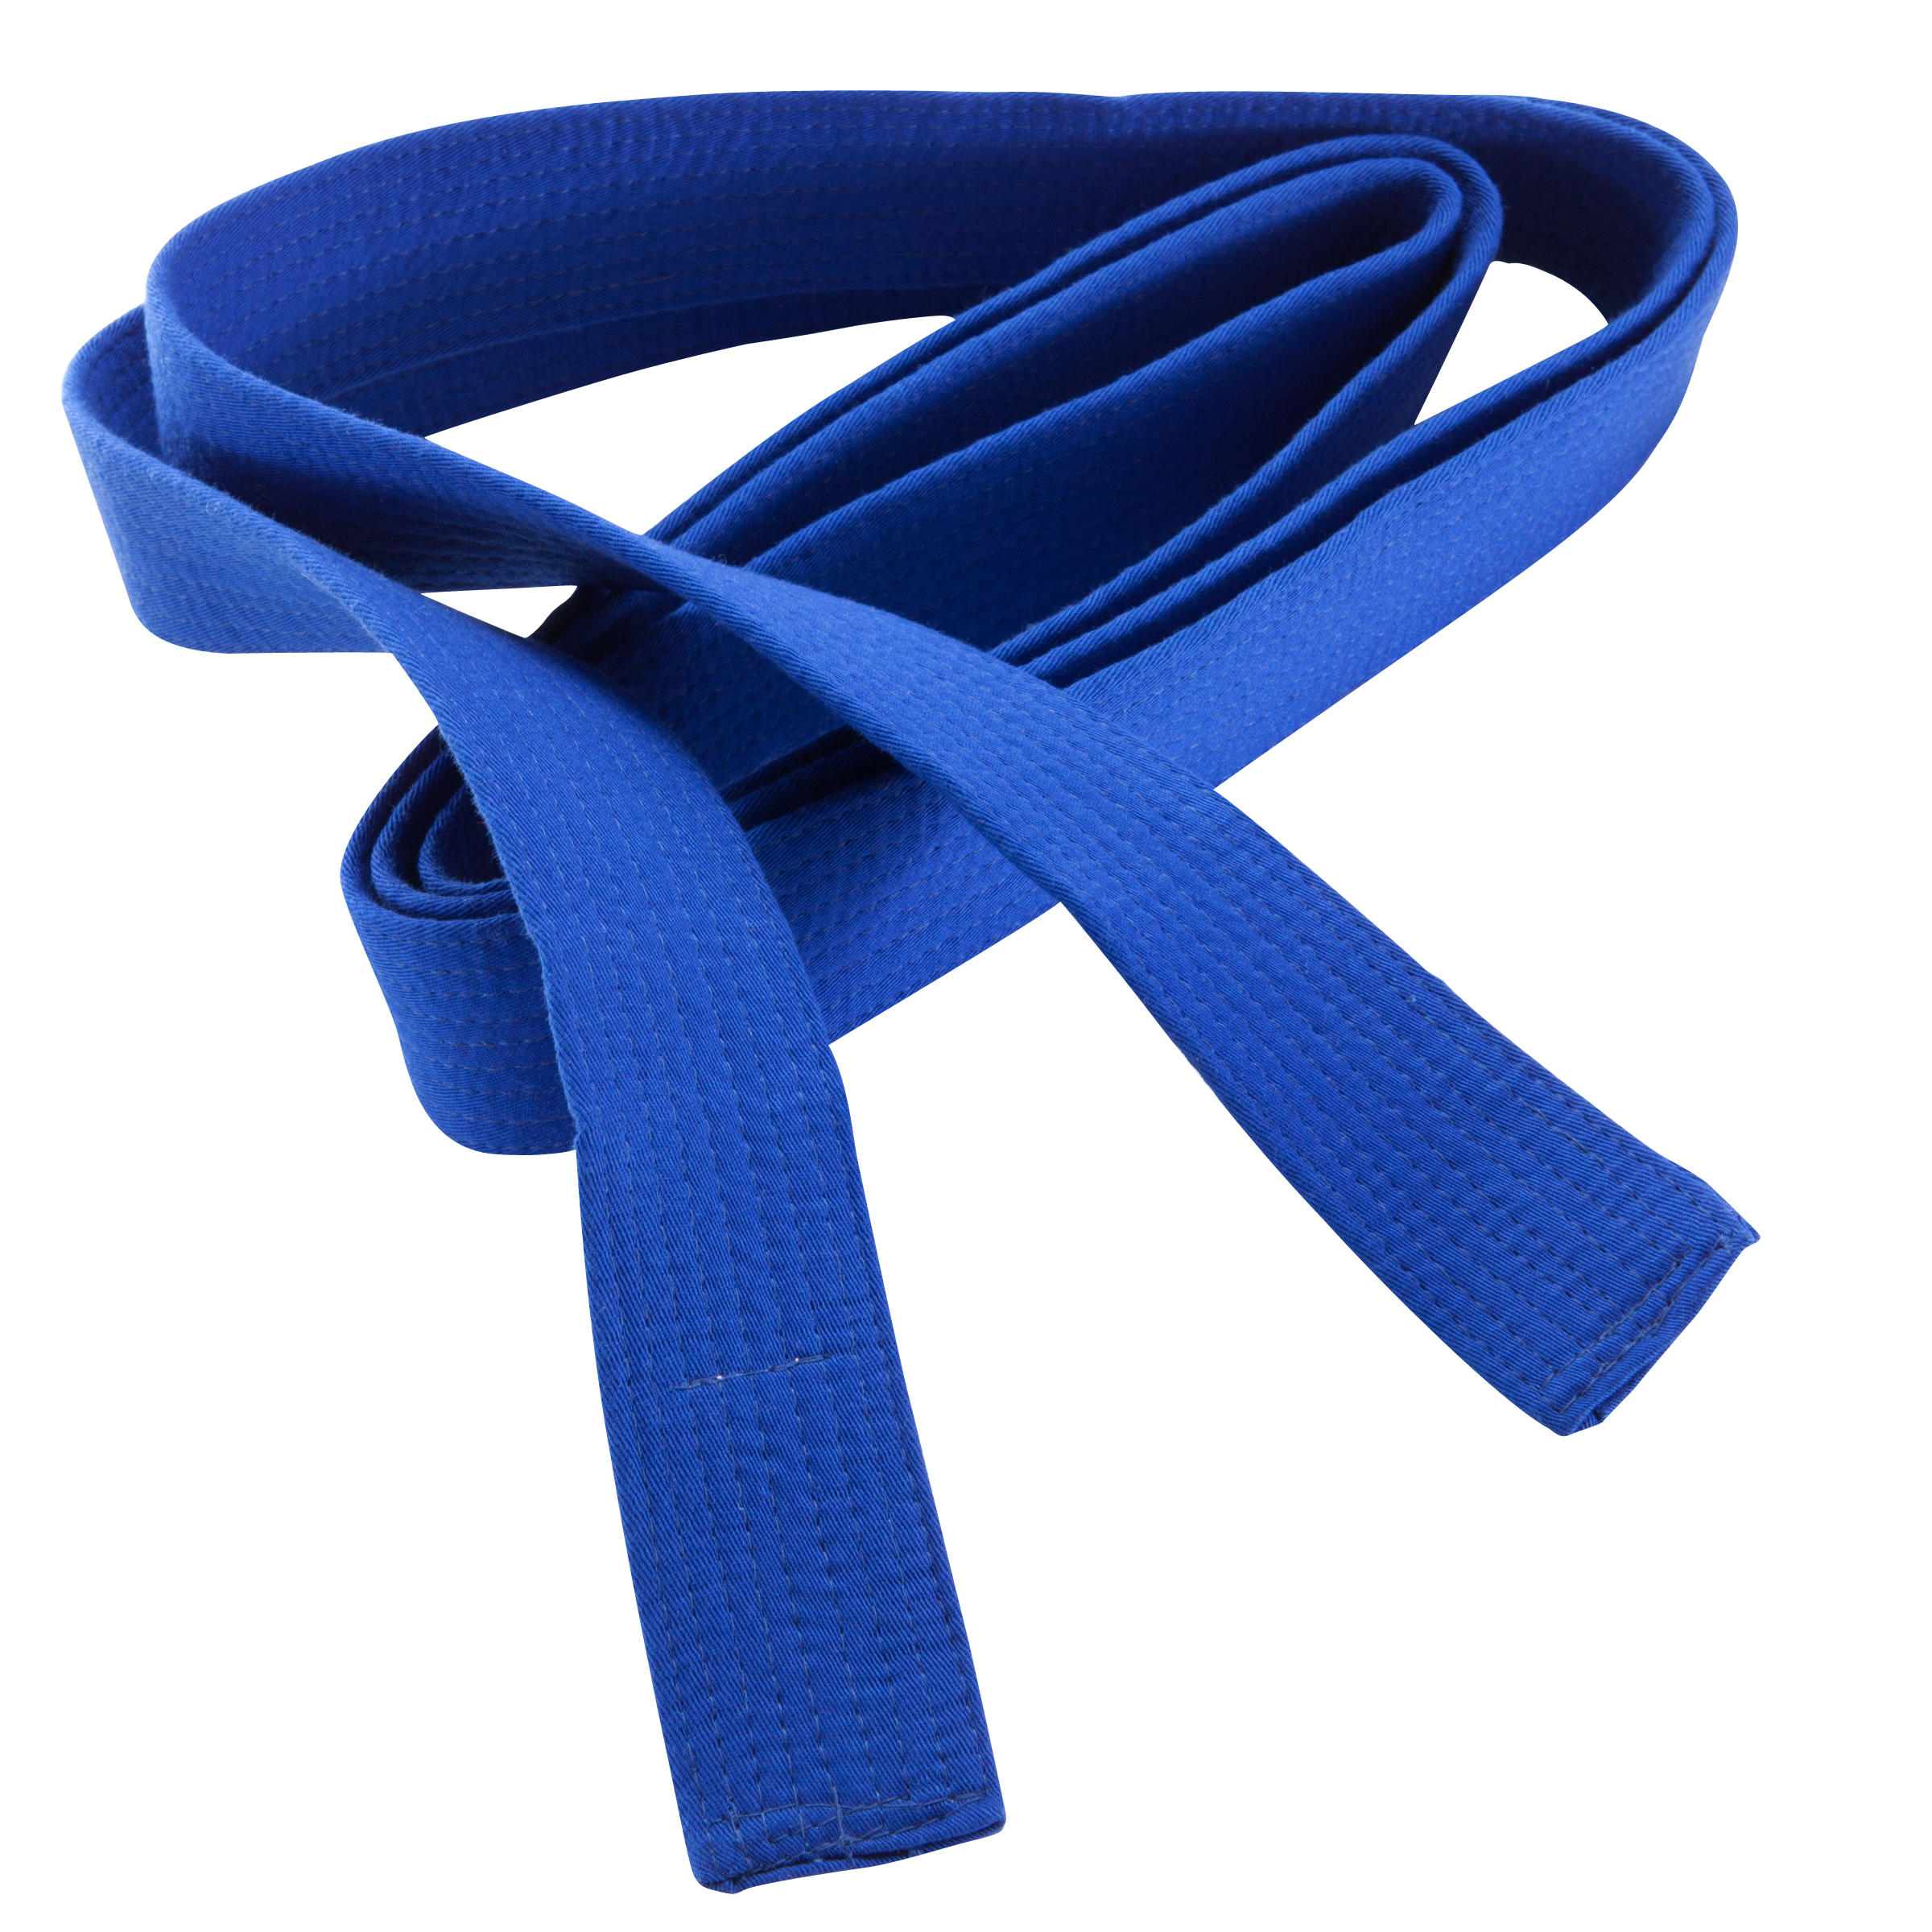 OUTSHOCK Piqué Belt 2.5 m - Blue